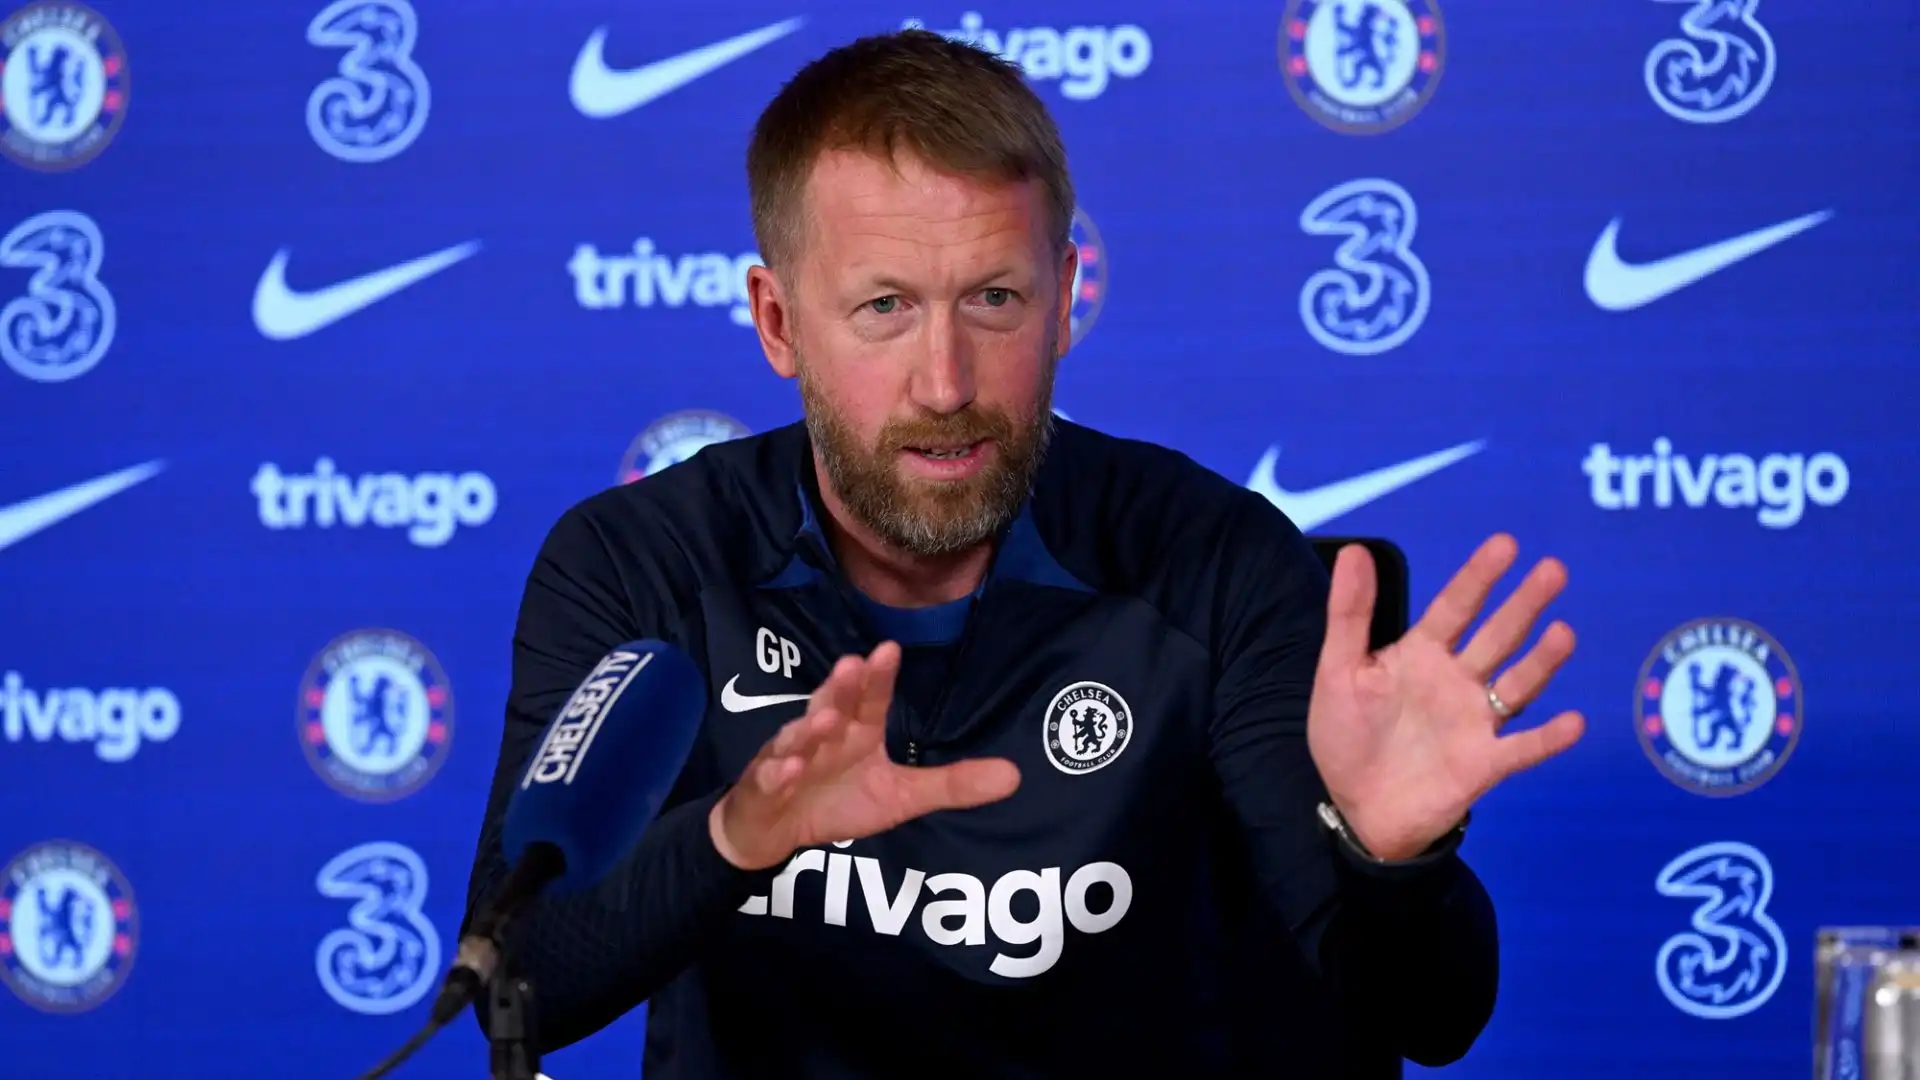 L'allenatore inglese è fermo dallo scorso aprile, quando fu esonerato dal Chelsea